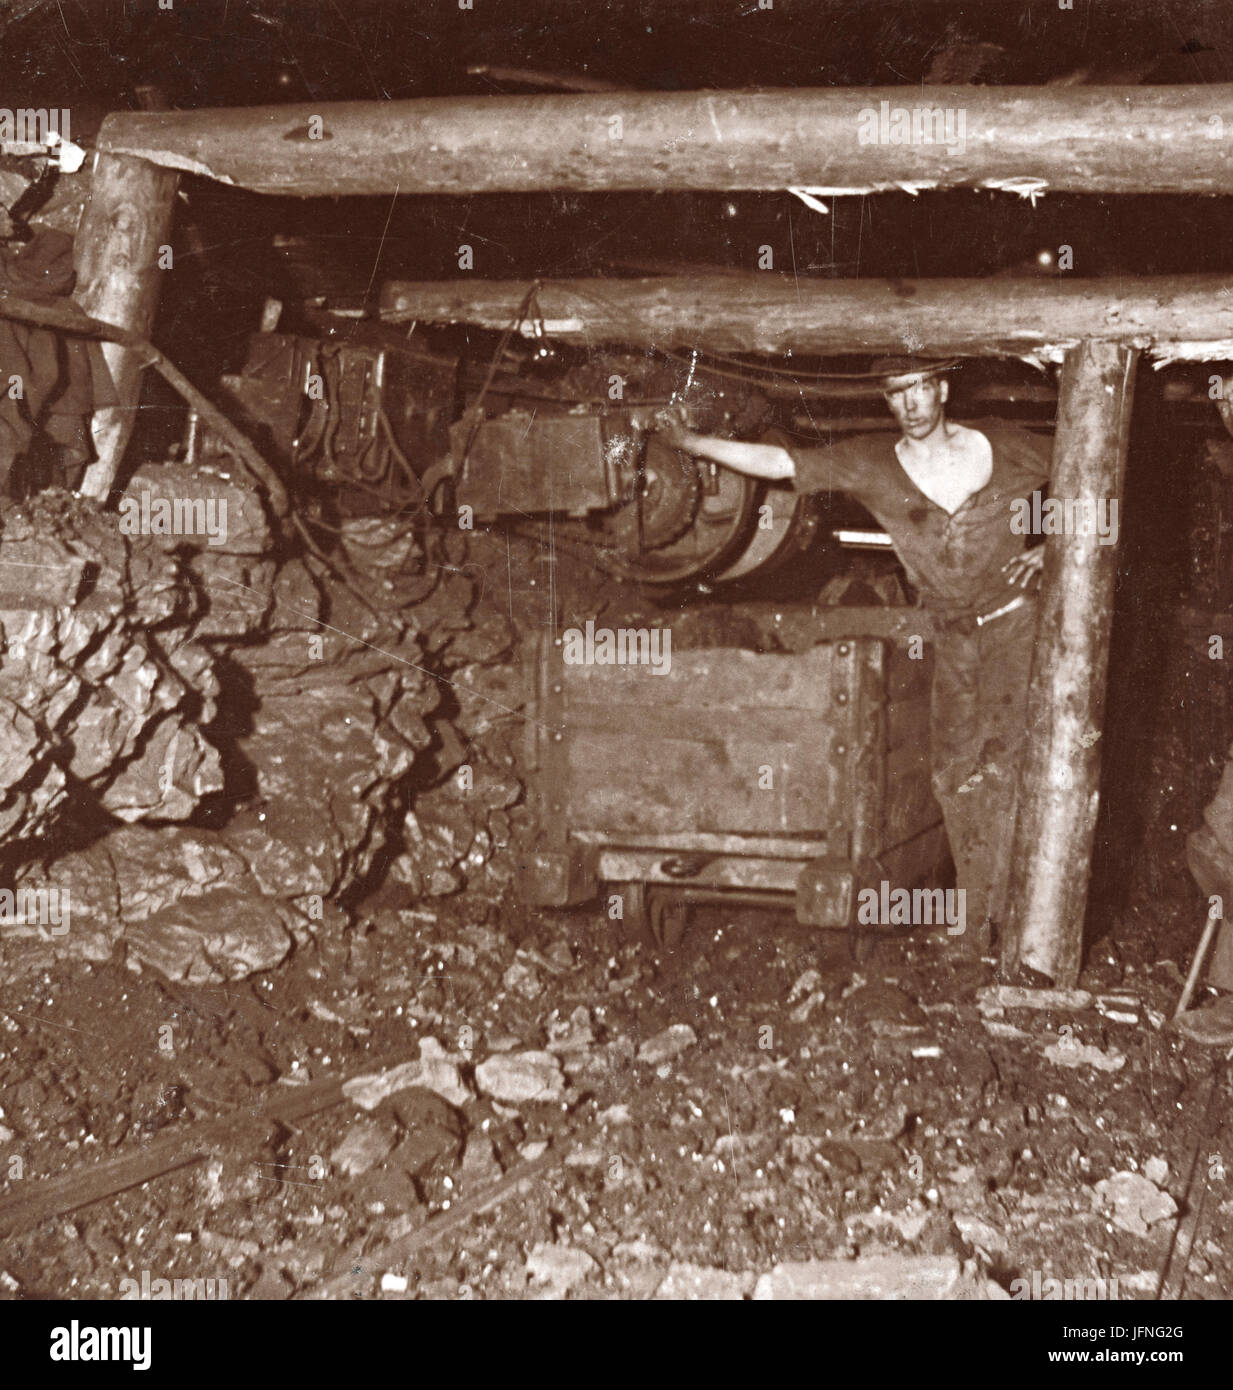 Collier Arbeitsmaschine Transport von Kohle aus dem Gesicht schneiden zu einem Wagen oder Wanne für den Transport aus dem Bergwerk, c.1920s, UK Stockfoto